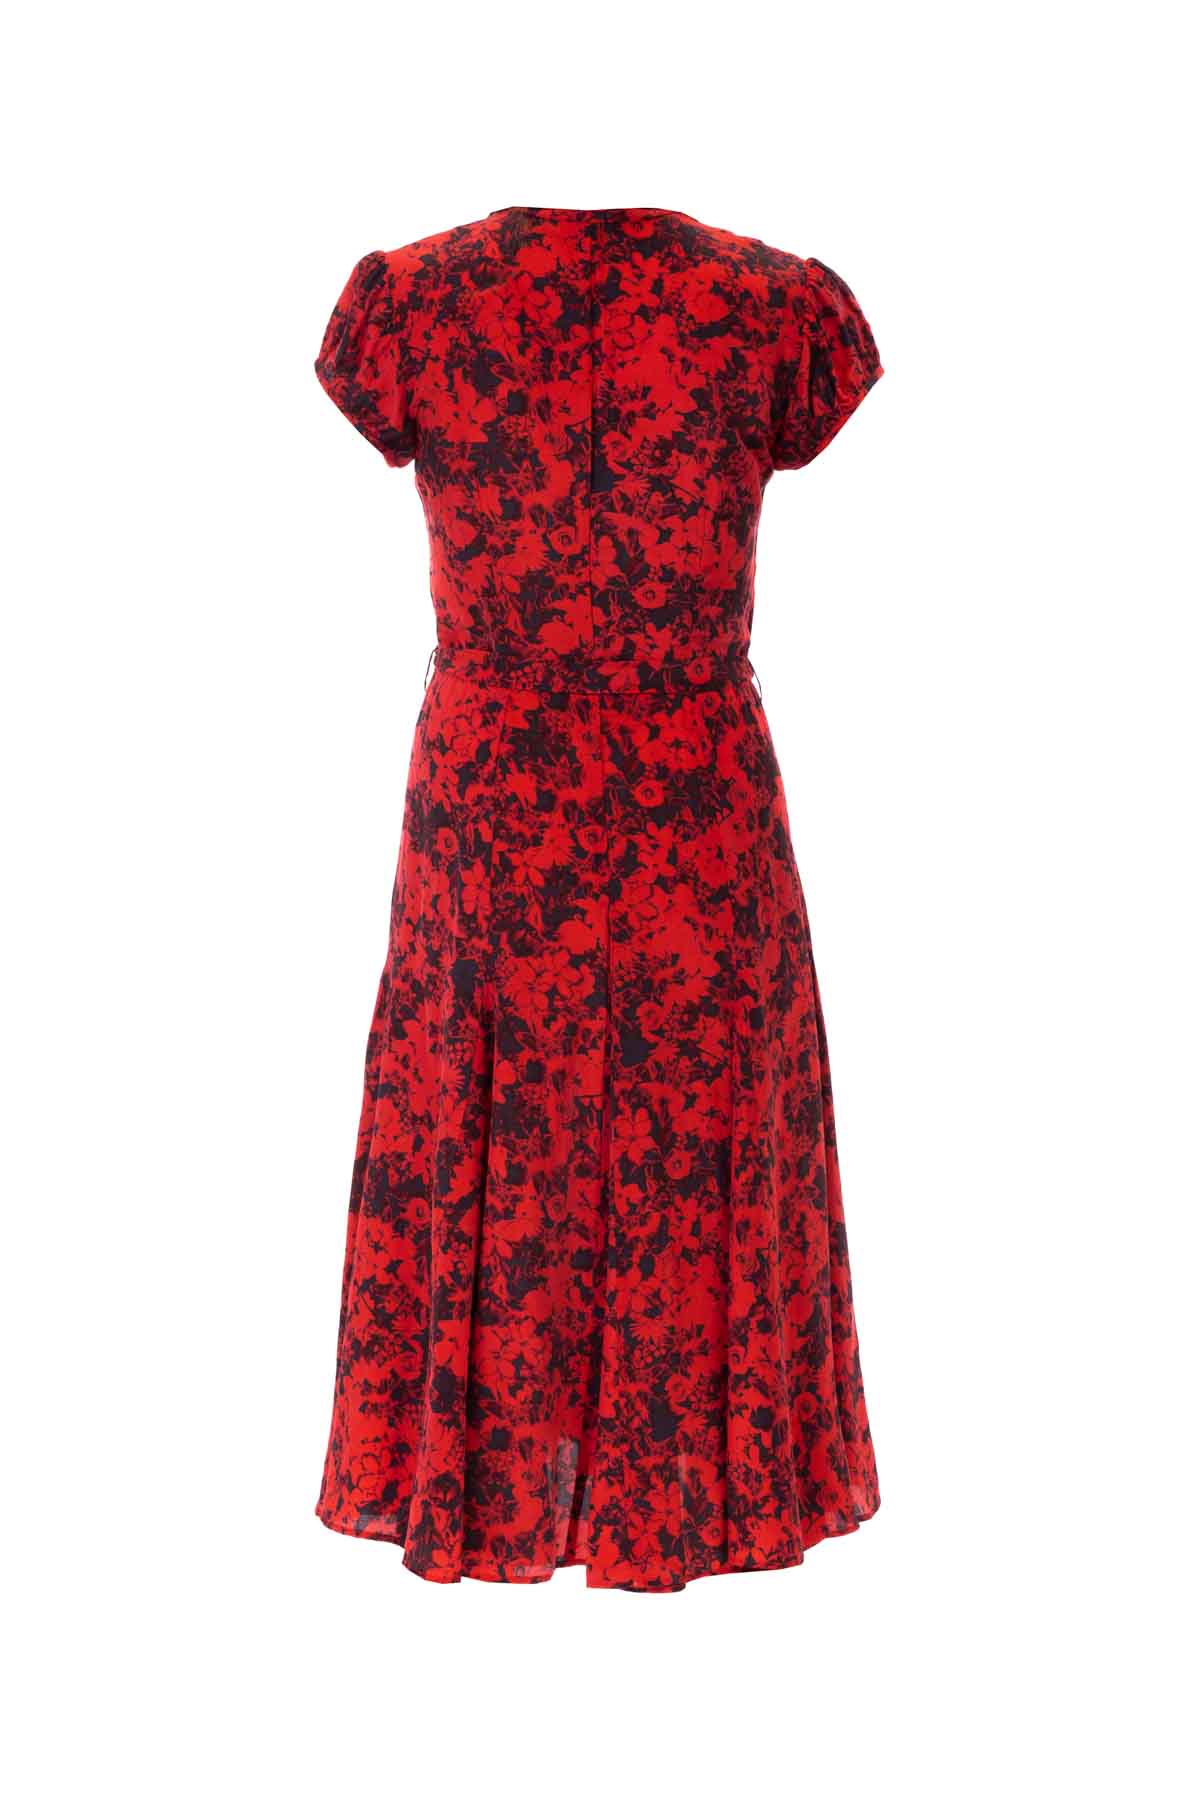 Silk Bugesha Dress - Red Floral